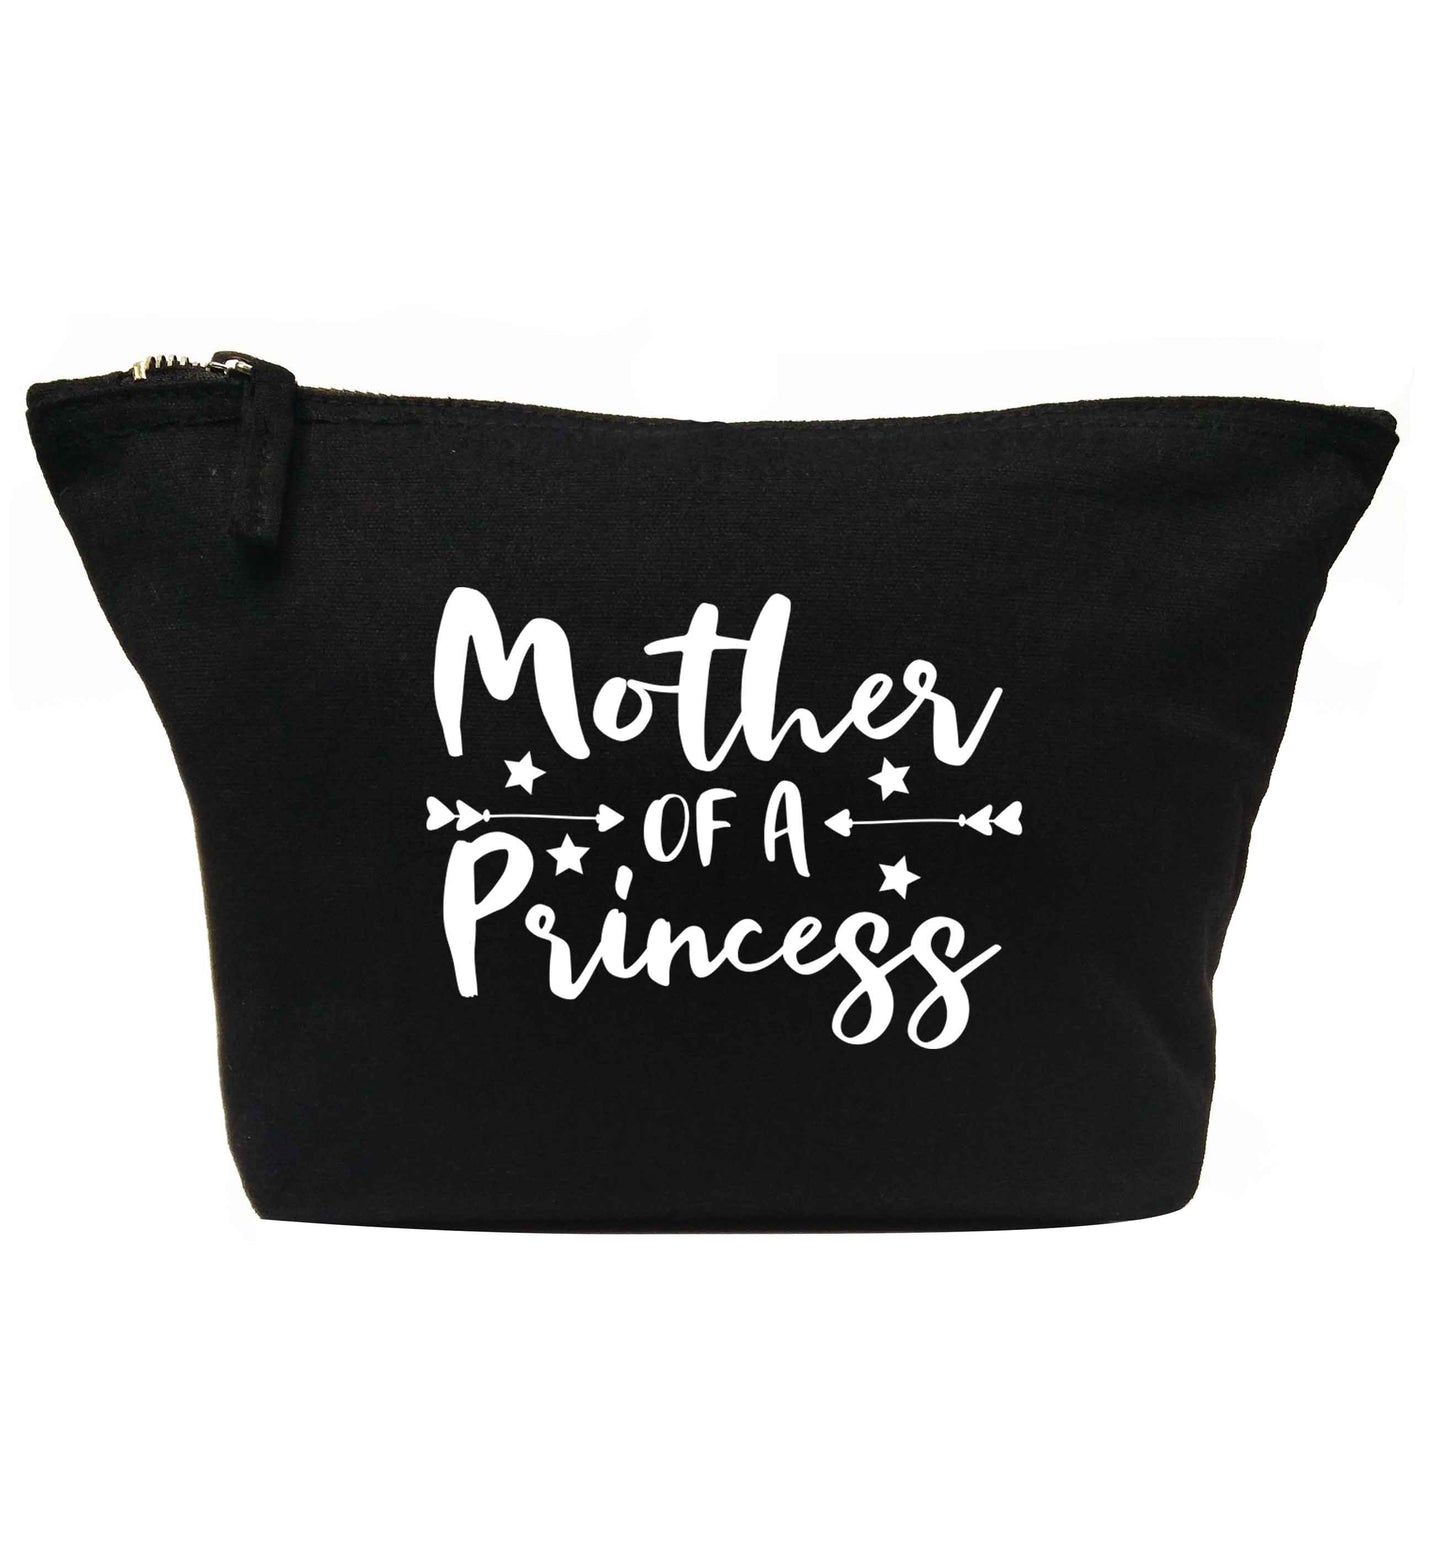 Mother of a princess | Makeup / wash bag